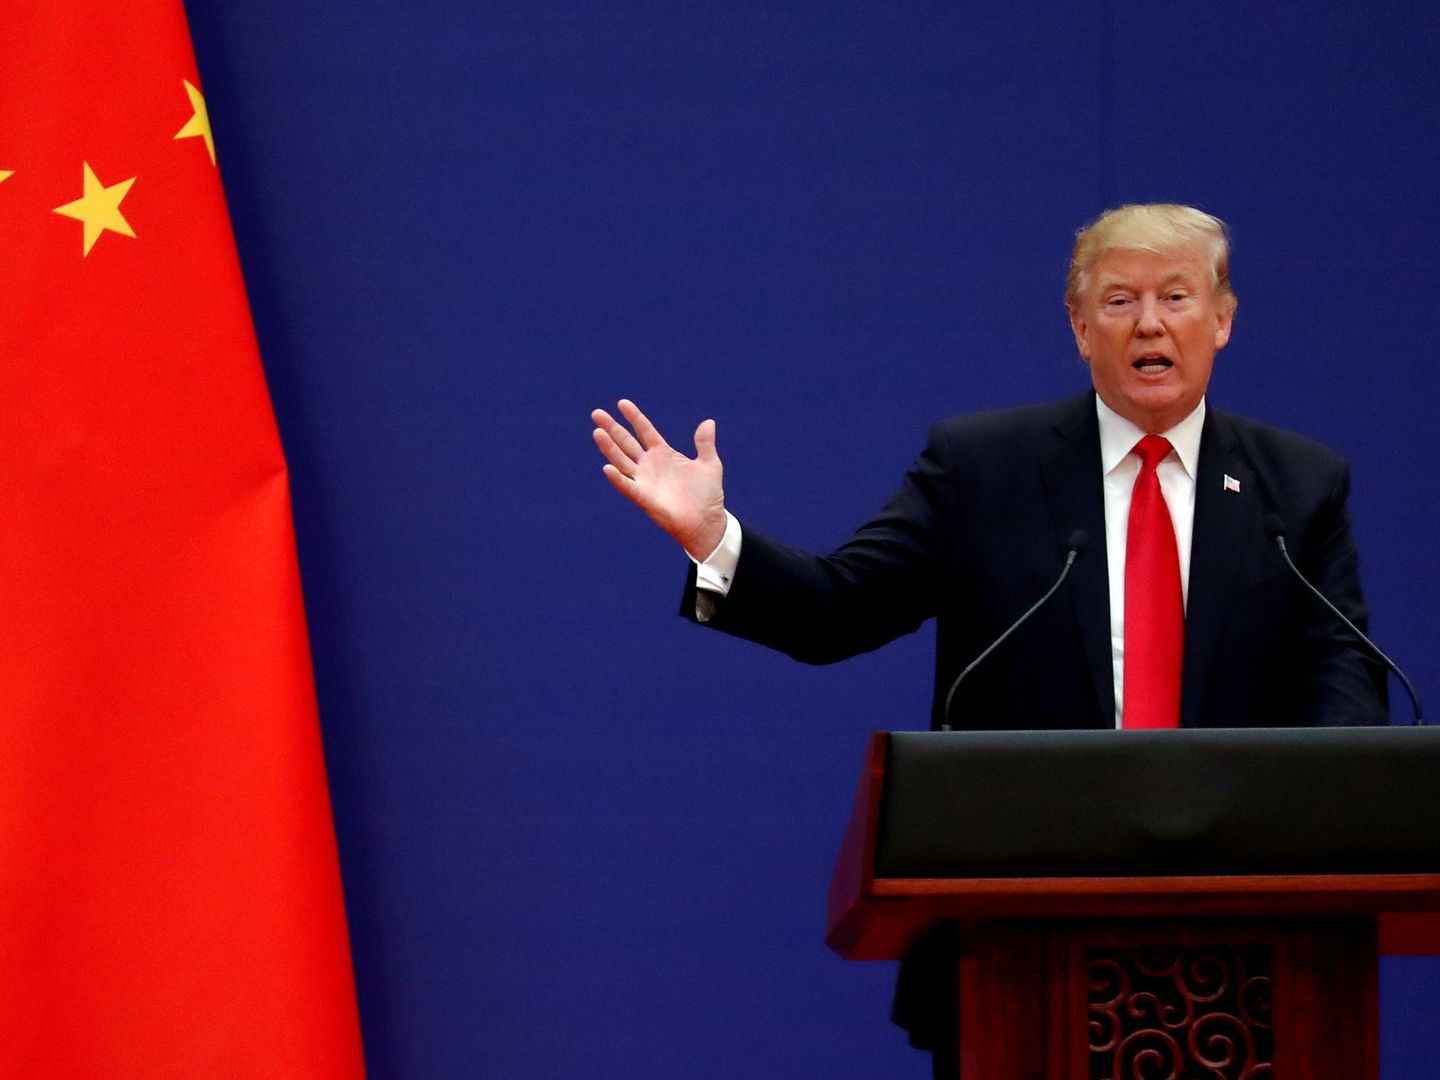 Trump da un discurso durante una visita a China (REUTERS)